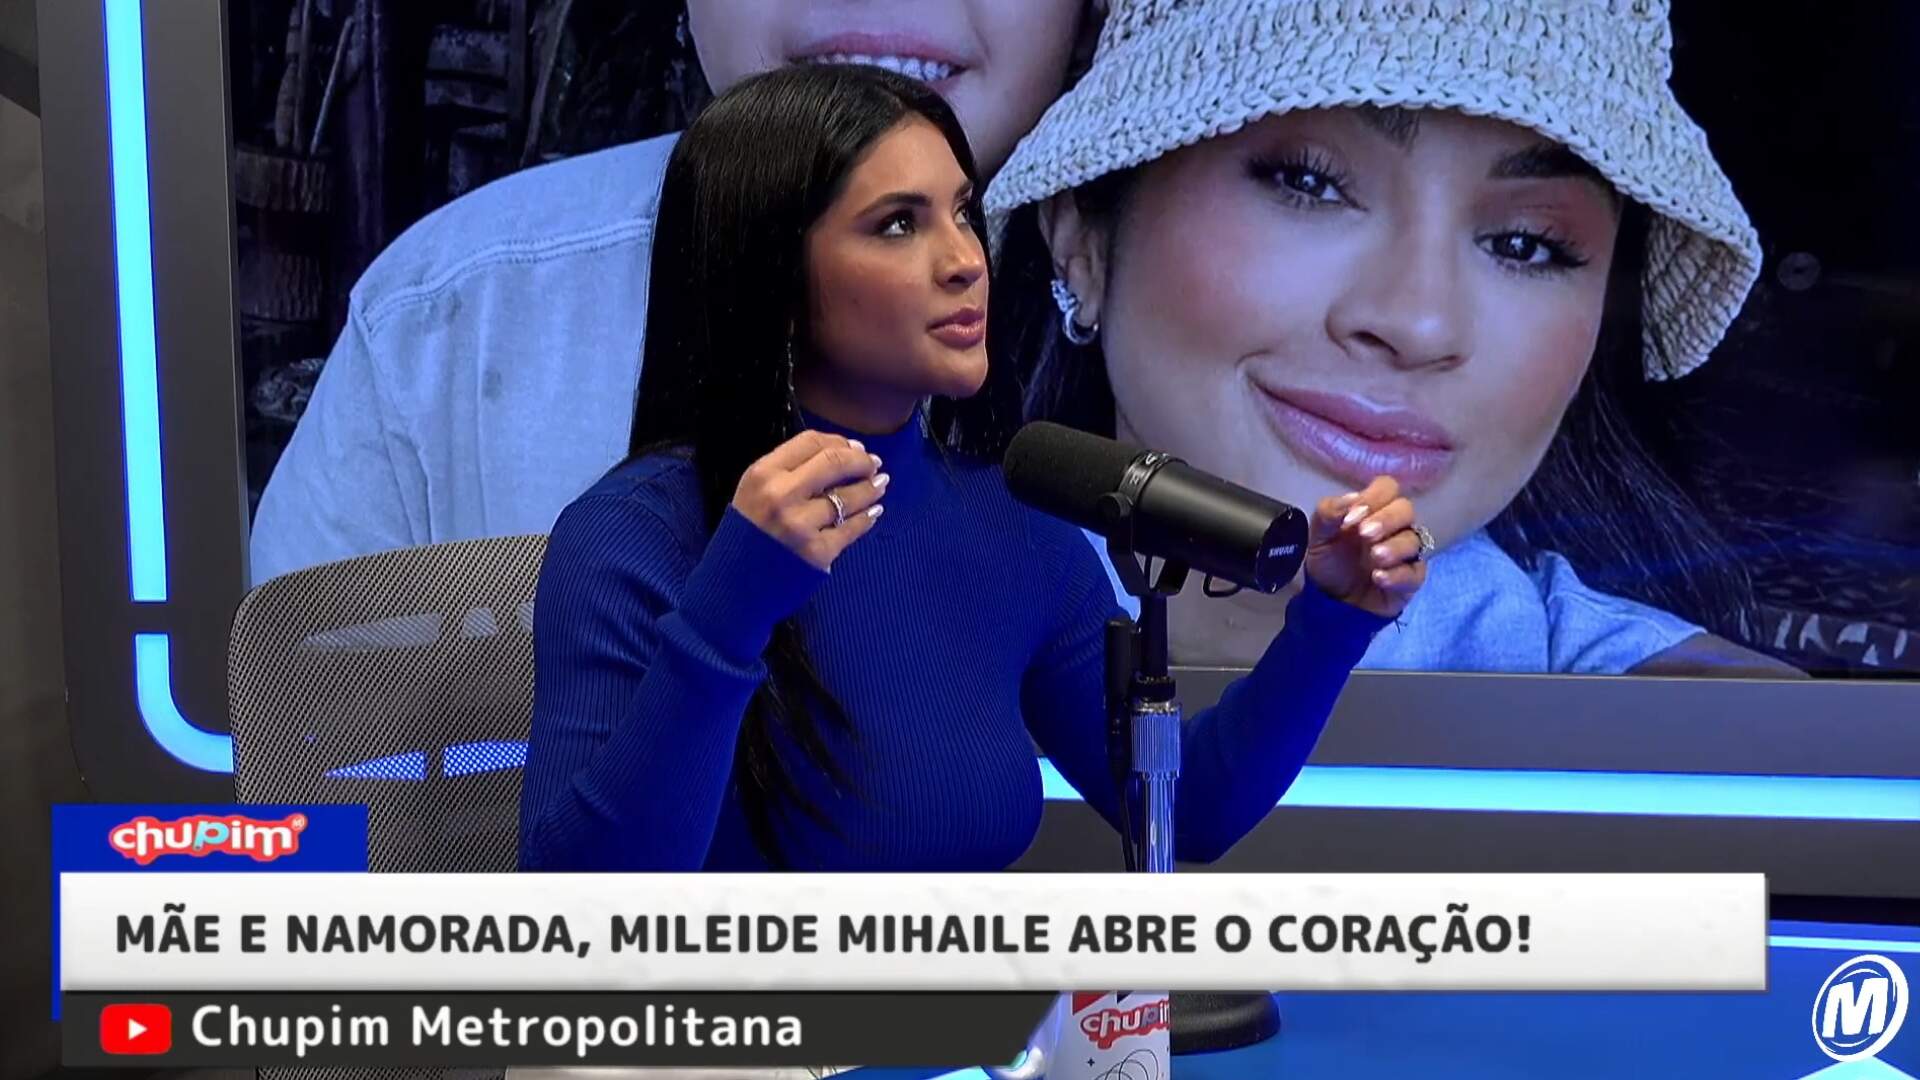 Mãe, namorada e influencer! Mileide Mihaile abre o coração e comenta sua vida nas redes - Metropolitana FM